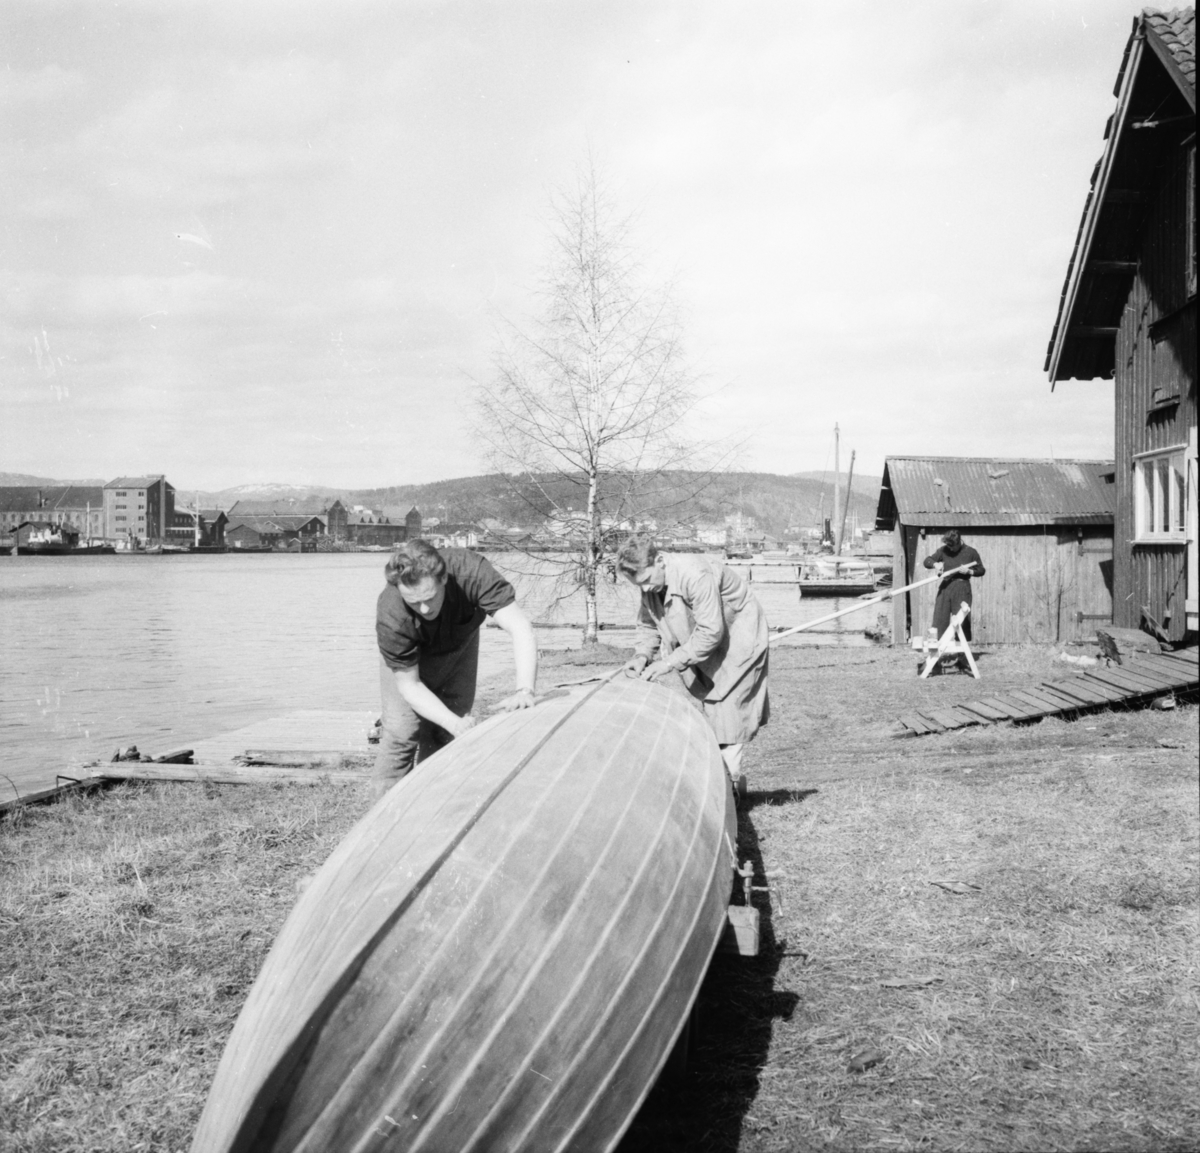 Vardens arkiv. "Roklubben i Porsgrunn" 24.04.1954